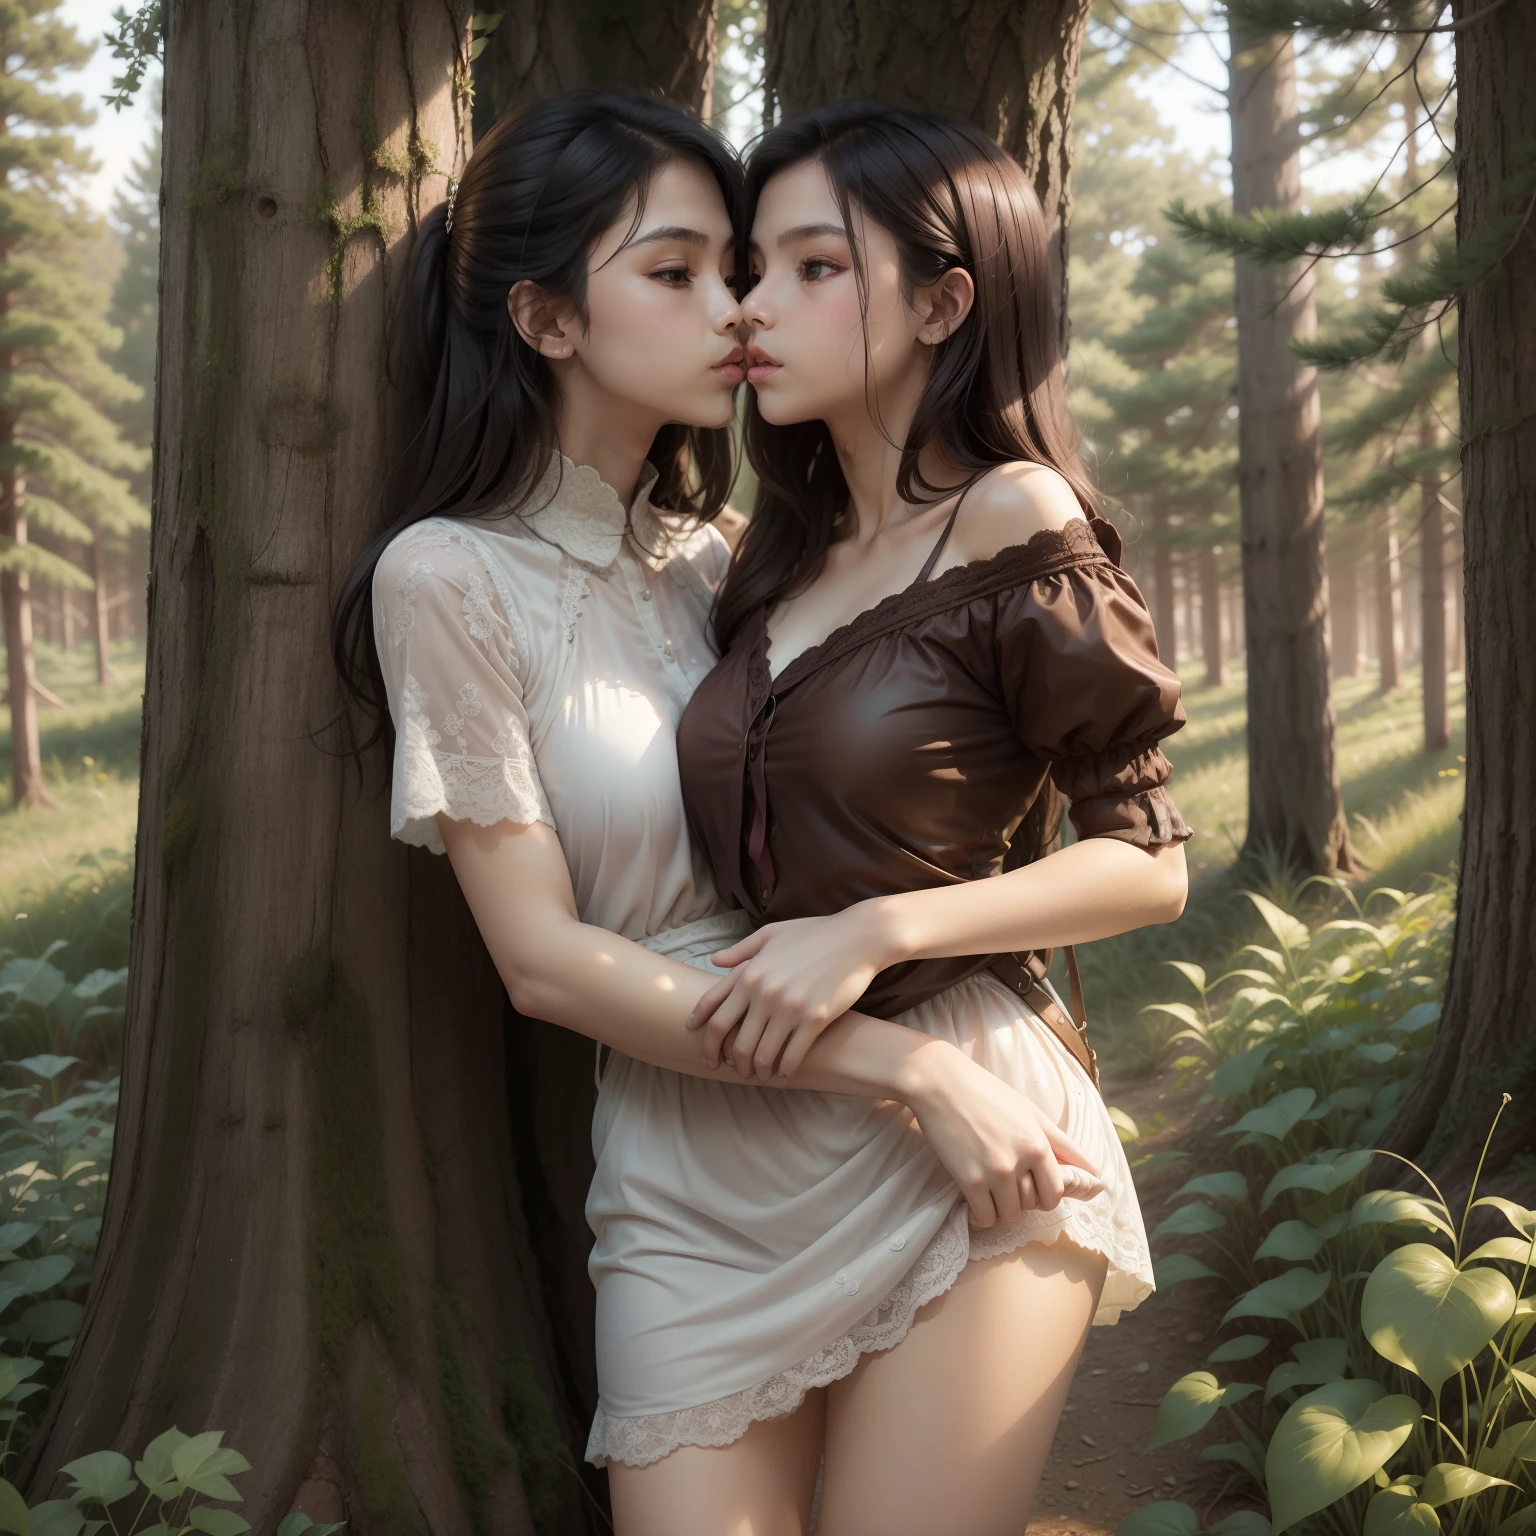 قبلة الفارس البكر التي تحمل الأميرة معًا في أمطار الغابة, (اثنين من رؤساء), جسم كامل